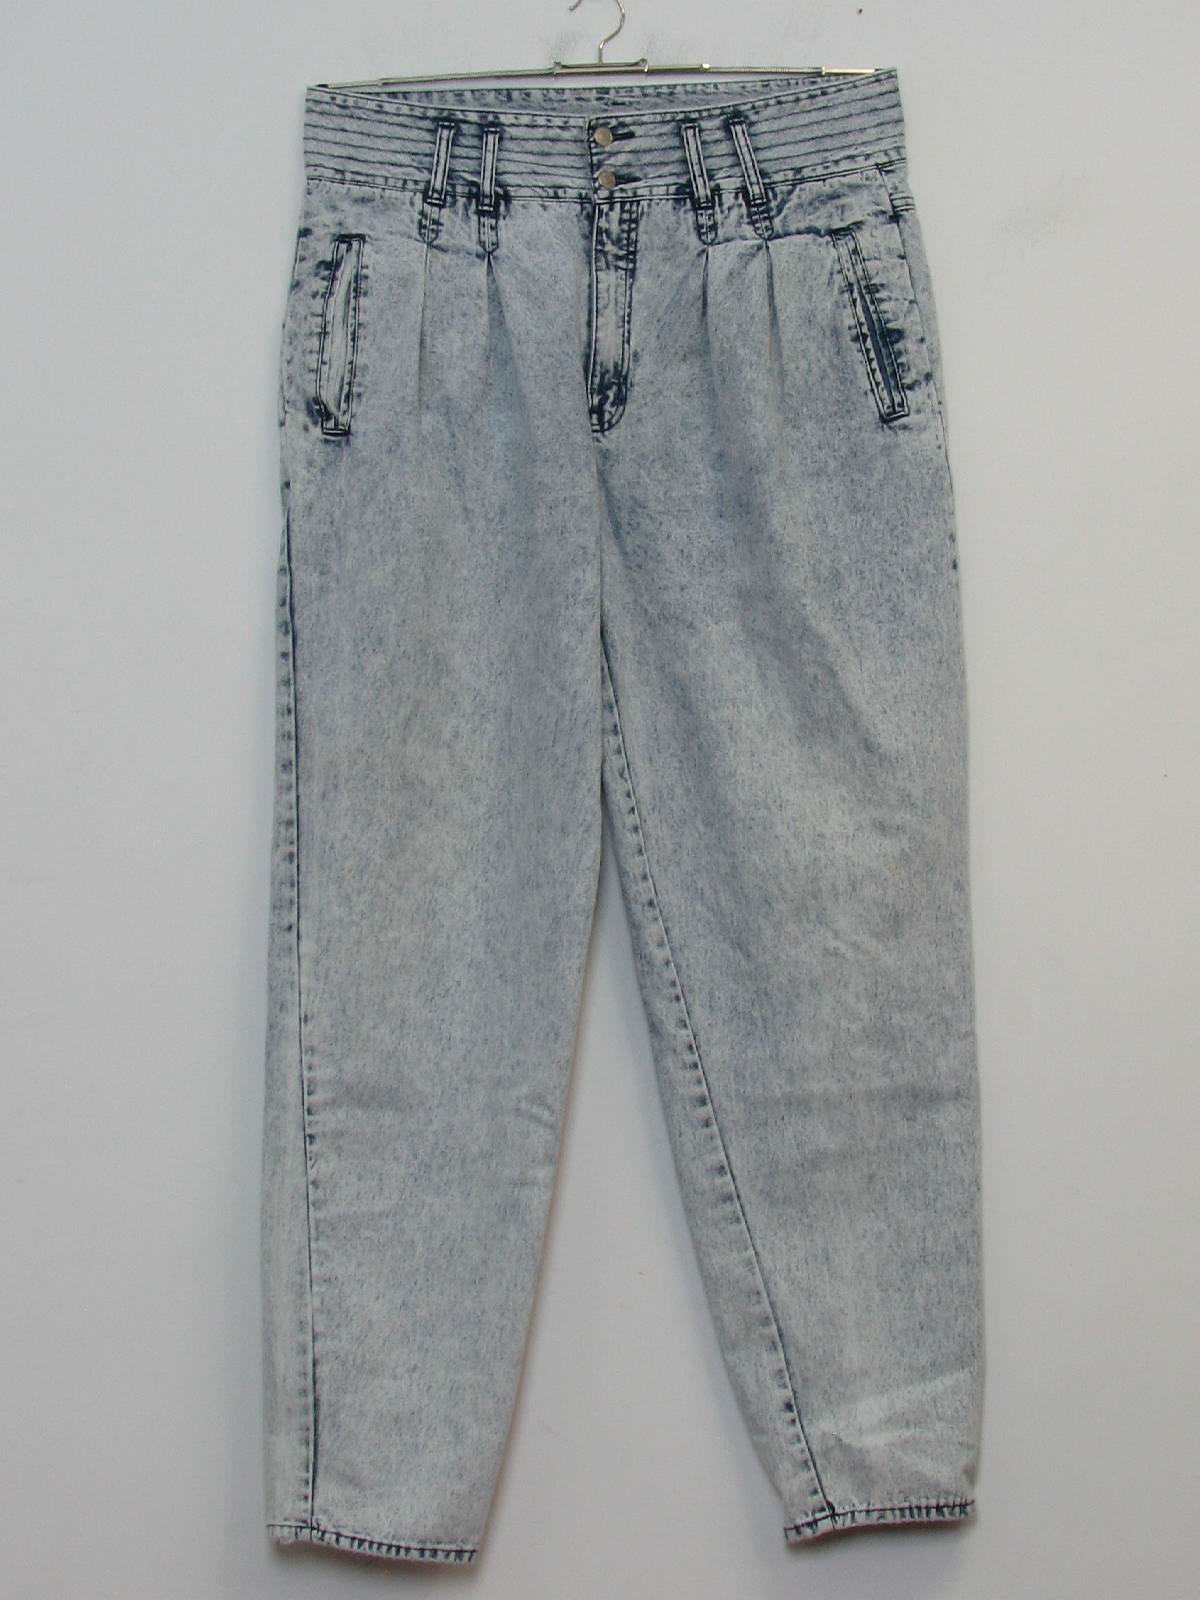 jordache jeans for sale